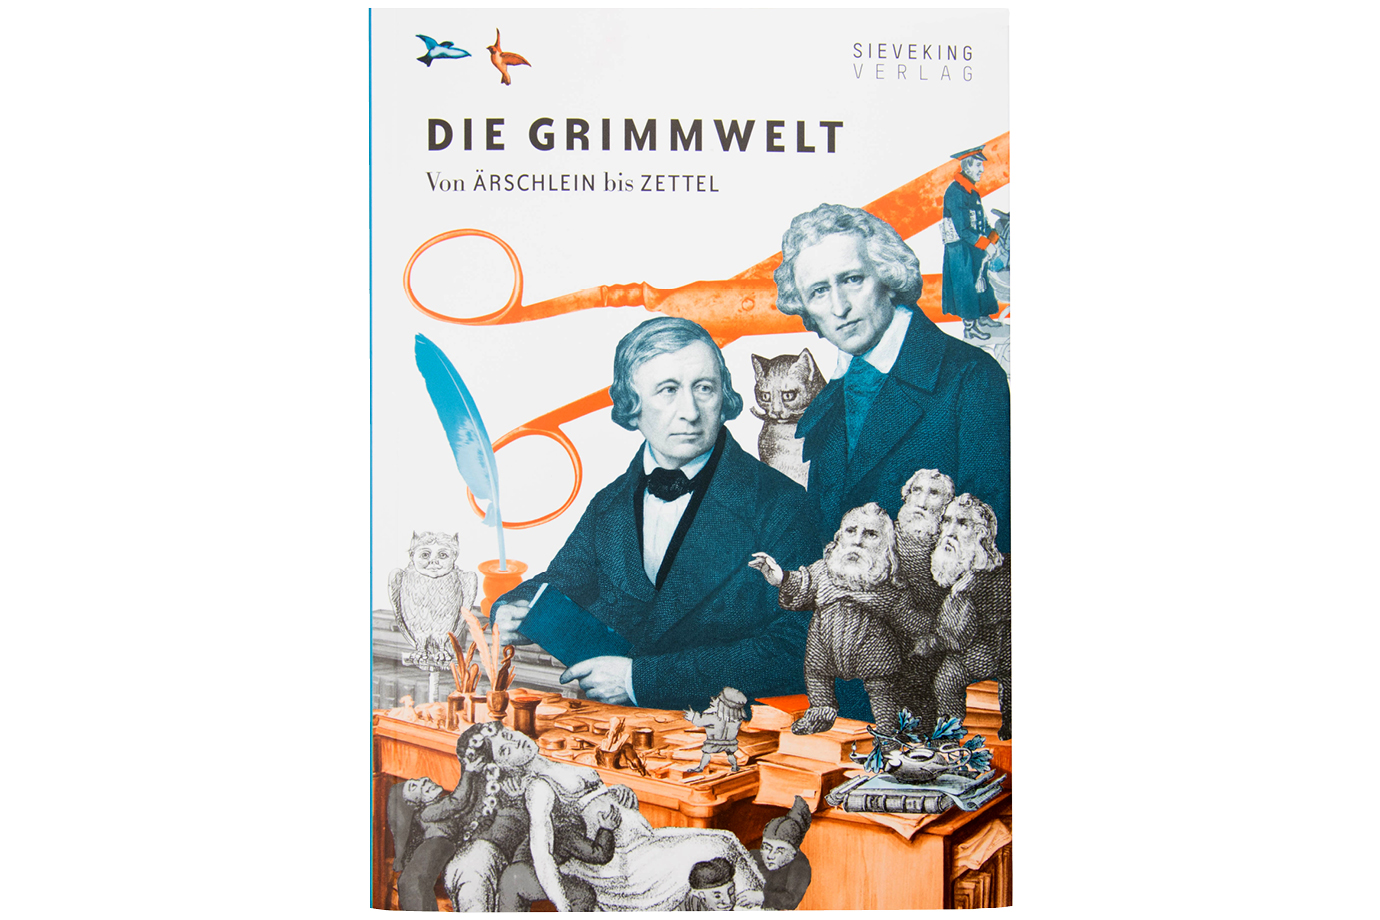 https://e-o-t.de/wordpress/wp-content/uploads/2017/05/2015_eot-Grimmwelt-Book-0.jpg